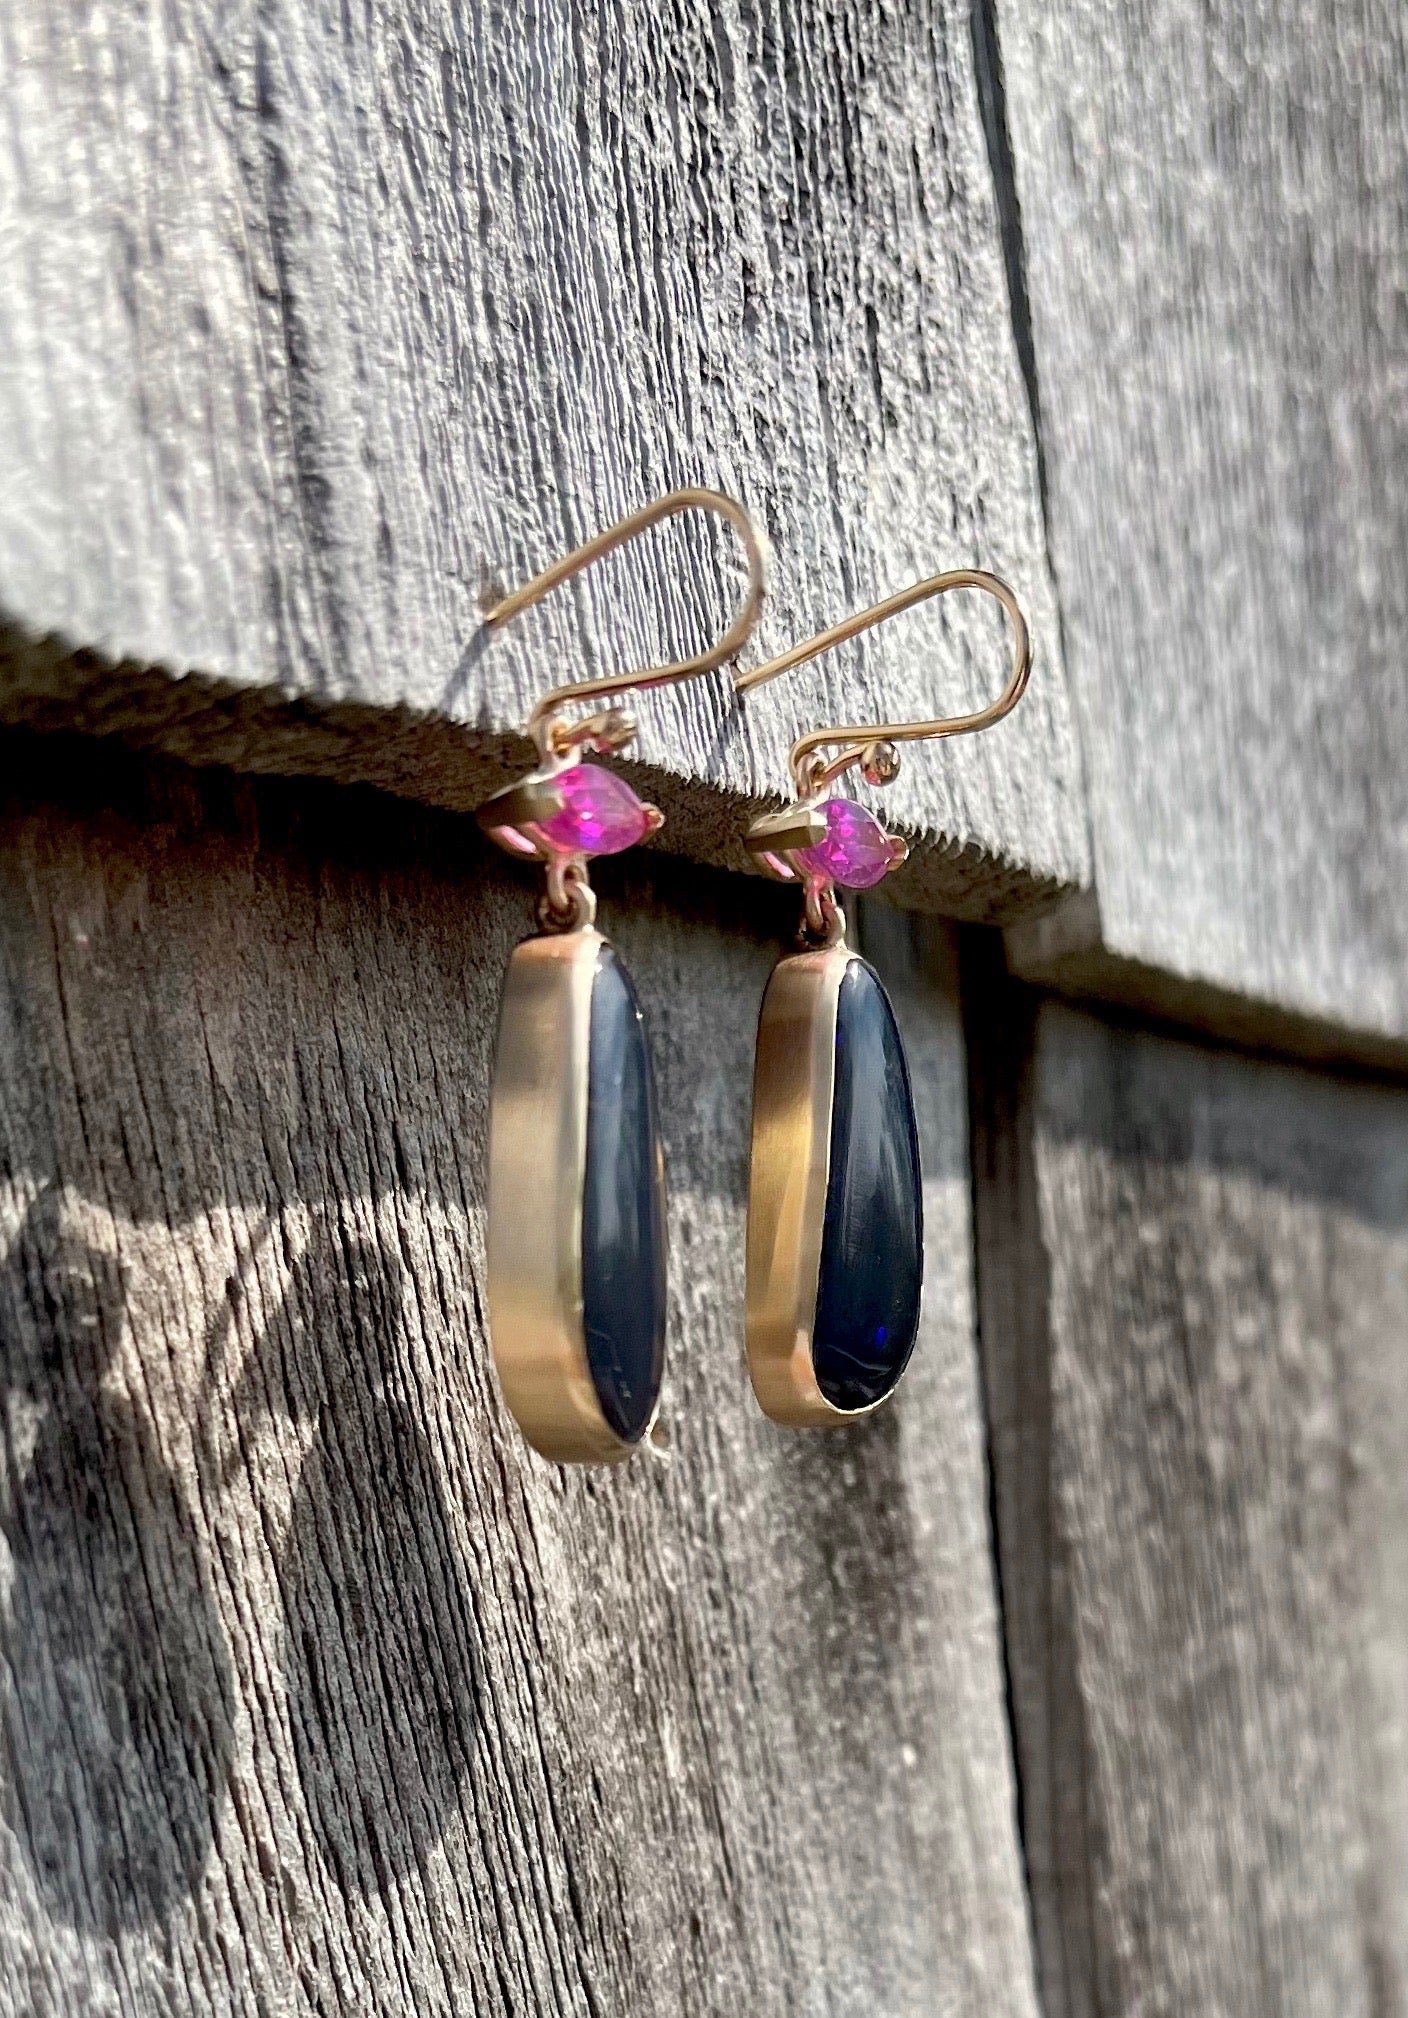 Opal & Sapphire Earrings